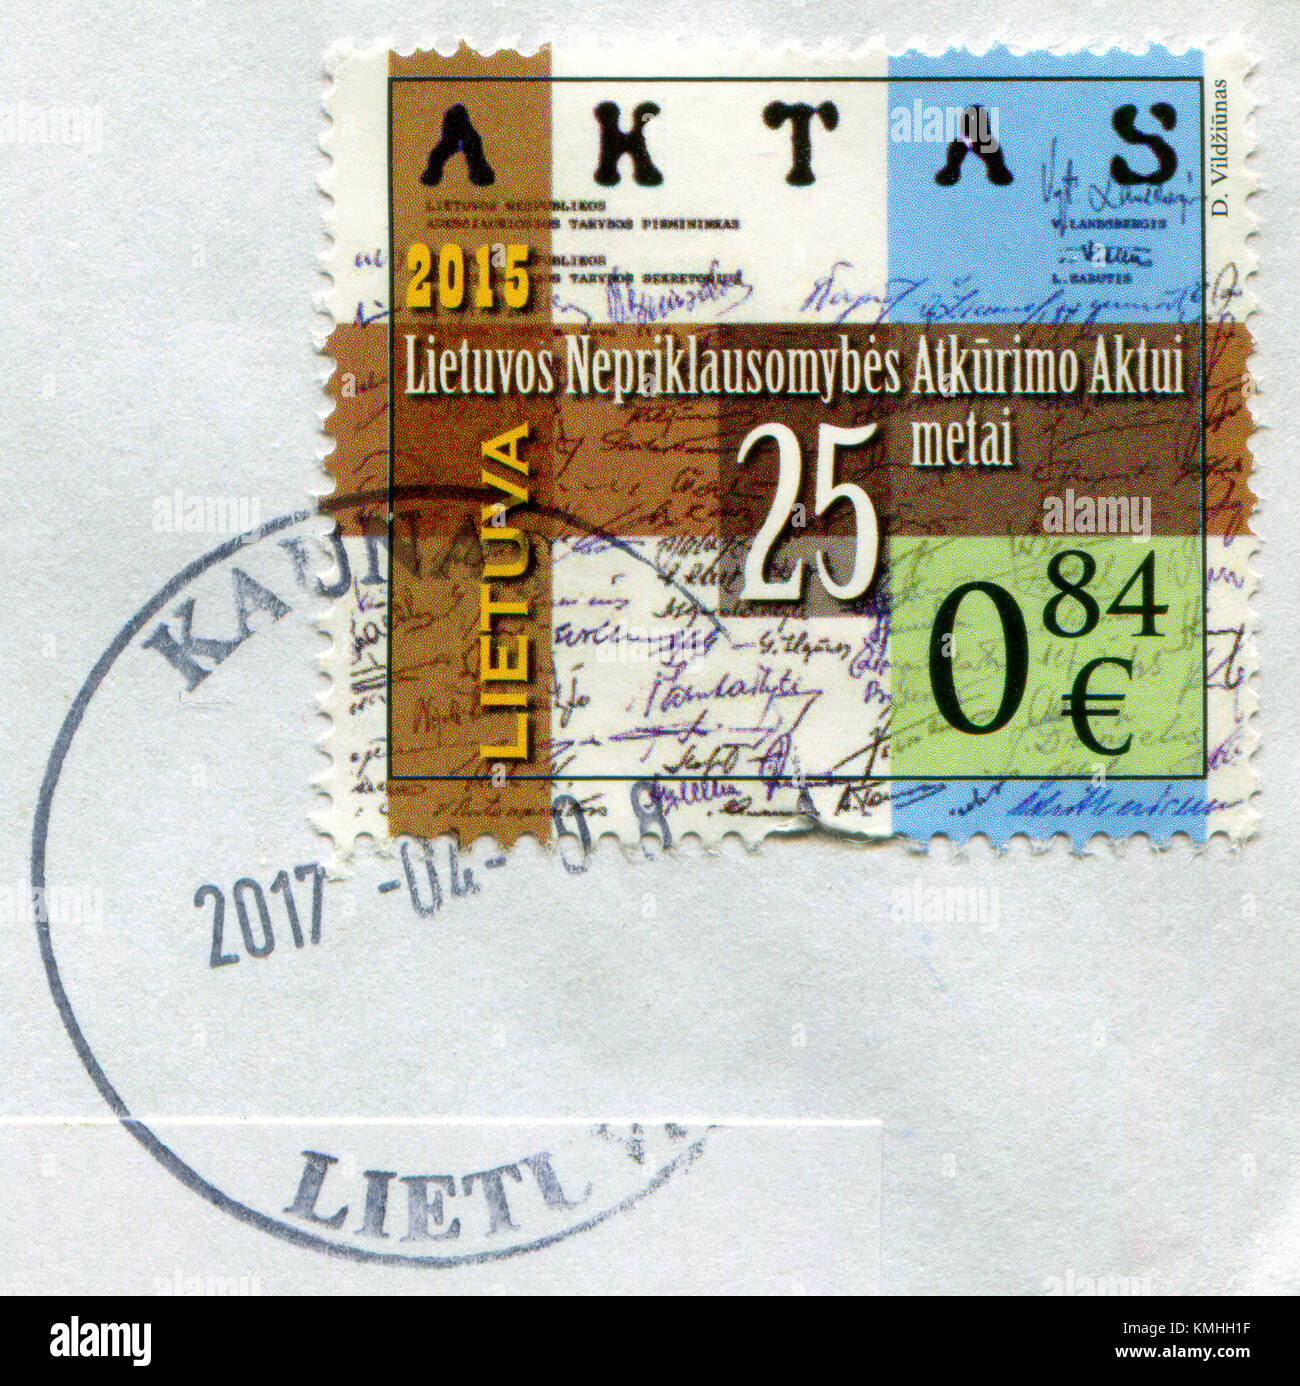 GOMEL, BIELORUSSIA, 6 DICEMBRE 2017, il francobollo stampato in Lituania mostra l'immagine dell'atto di ripristino dell'indipendenza della Lituania, intorno al 2015. Foto Stock